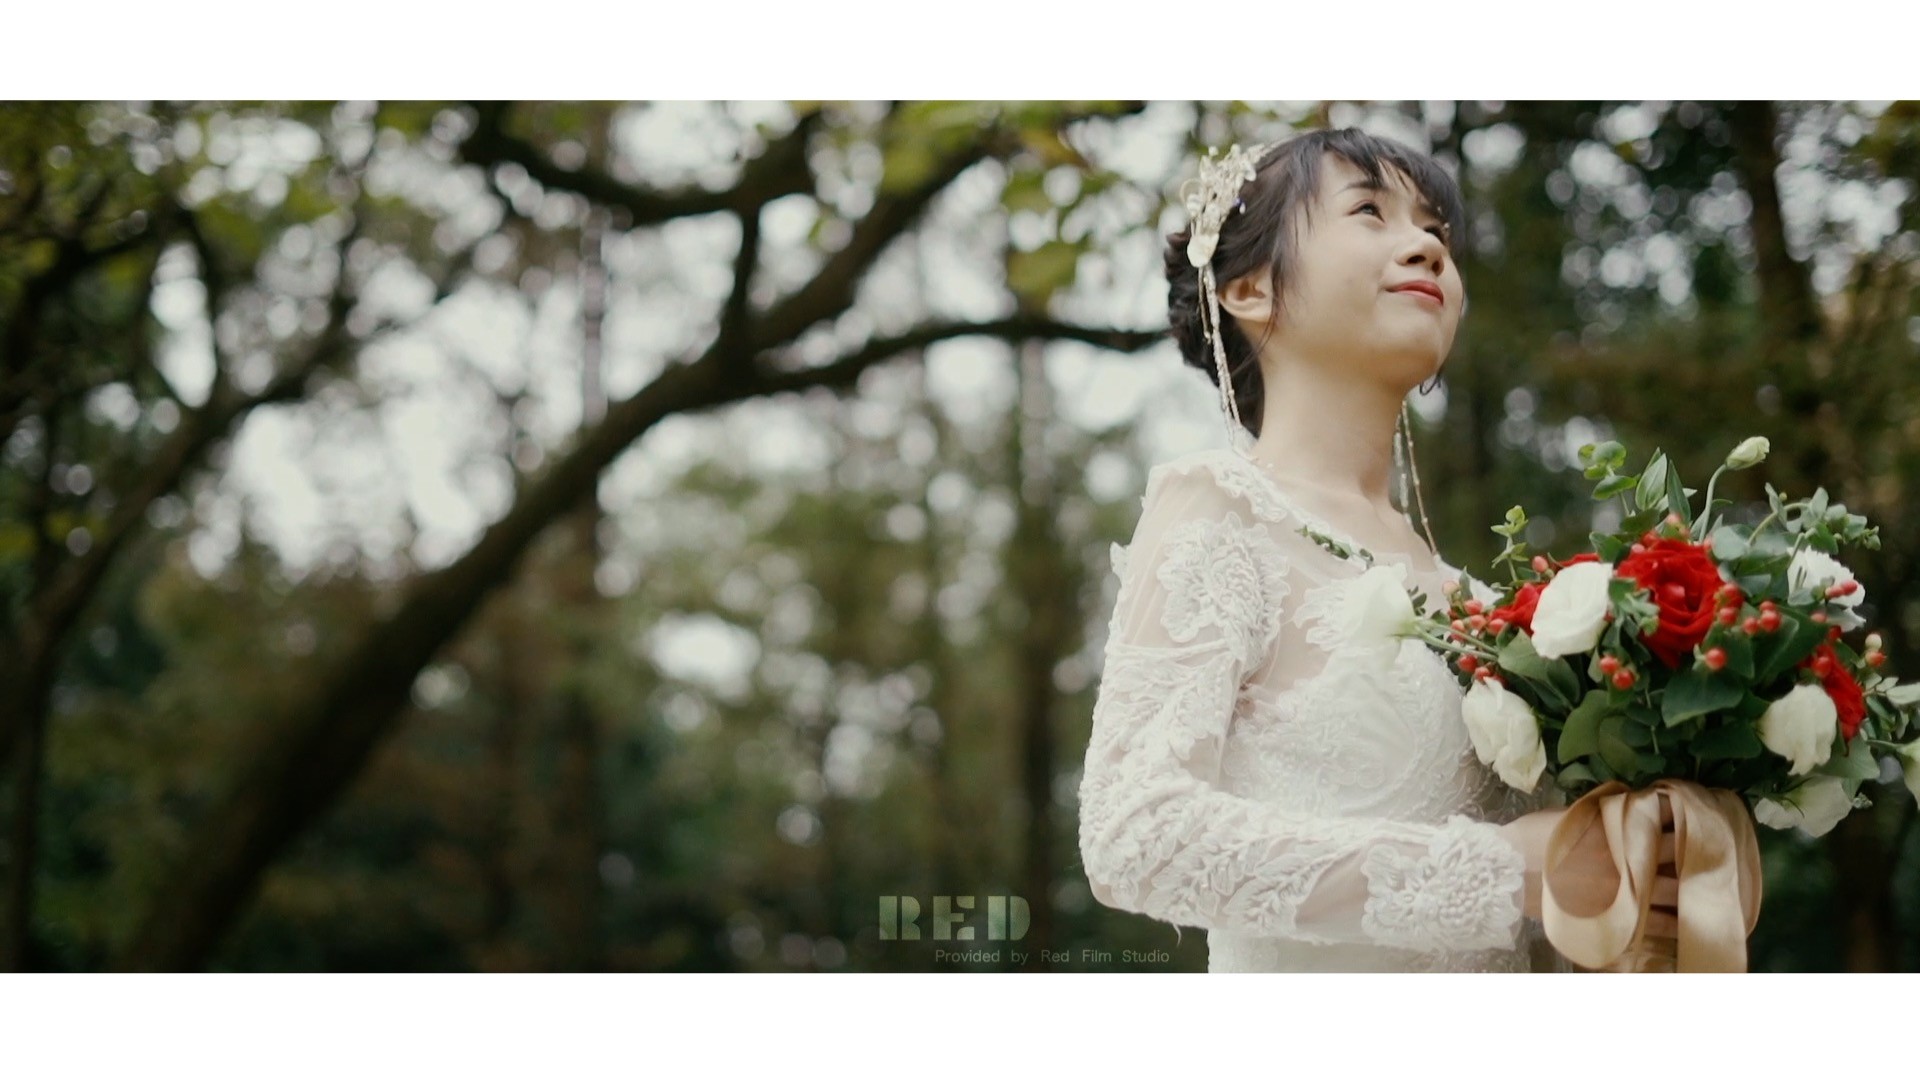 婚礼单机MV-RED film studio 瑞得影像 10.12 